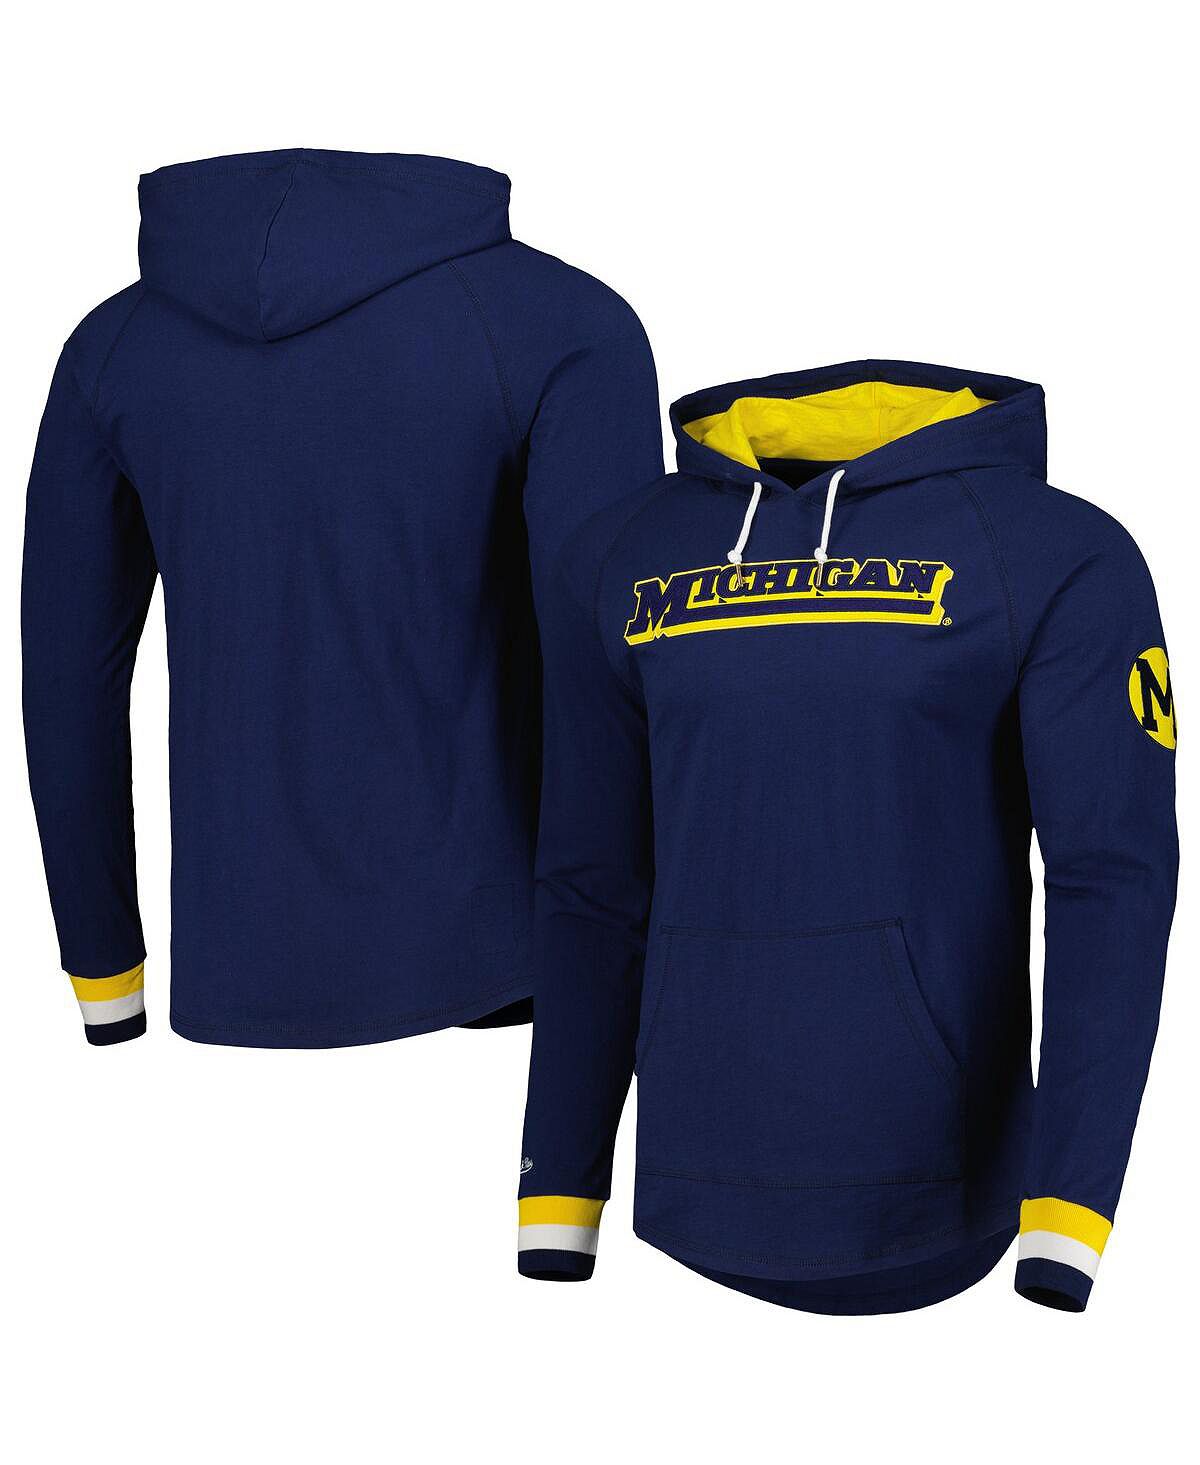 Мужской темно-синий пуловер с капюшоном Michigan Wolverines Legendary реглан Mitchell & Ness